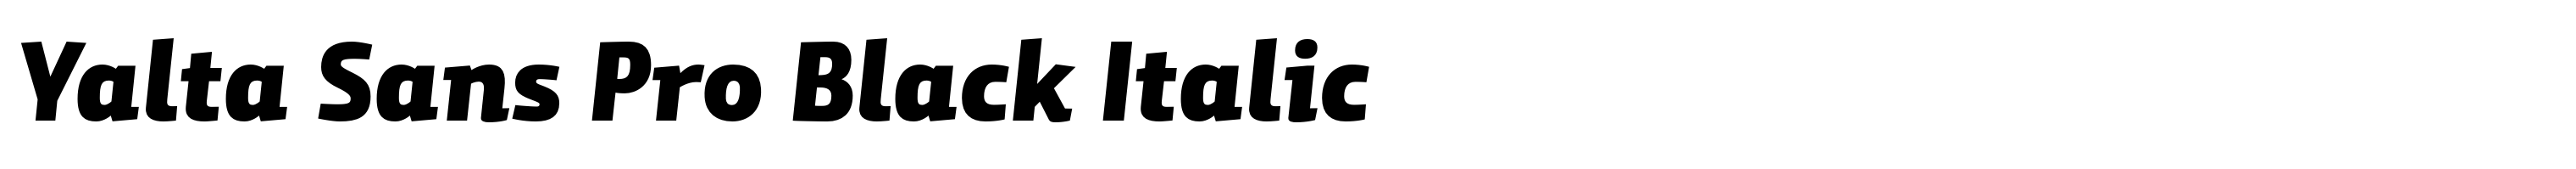 Yalta Sans Pro Black Italic